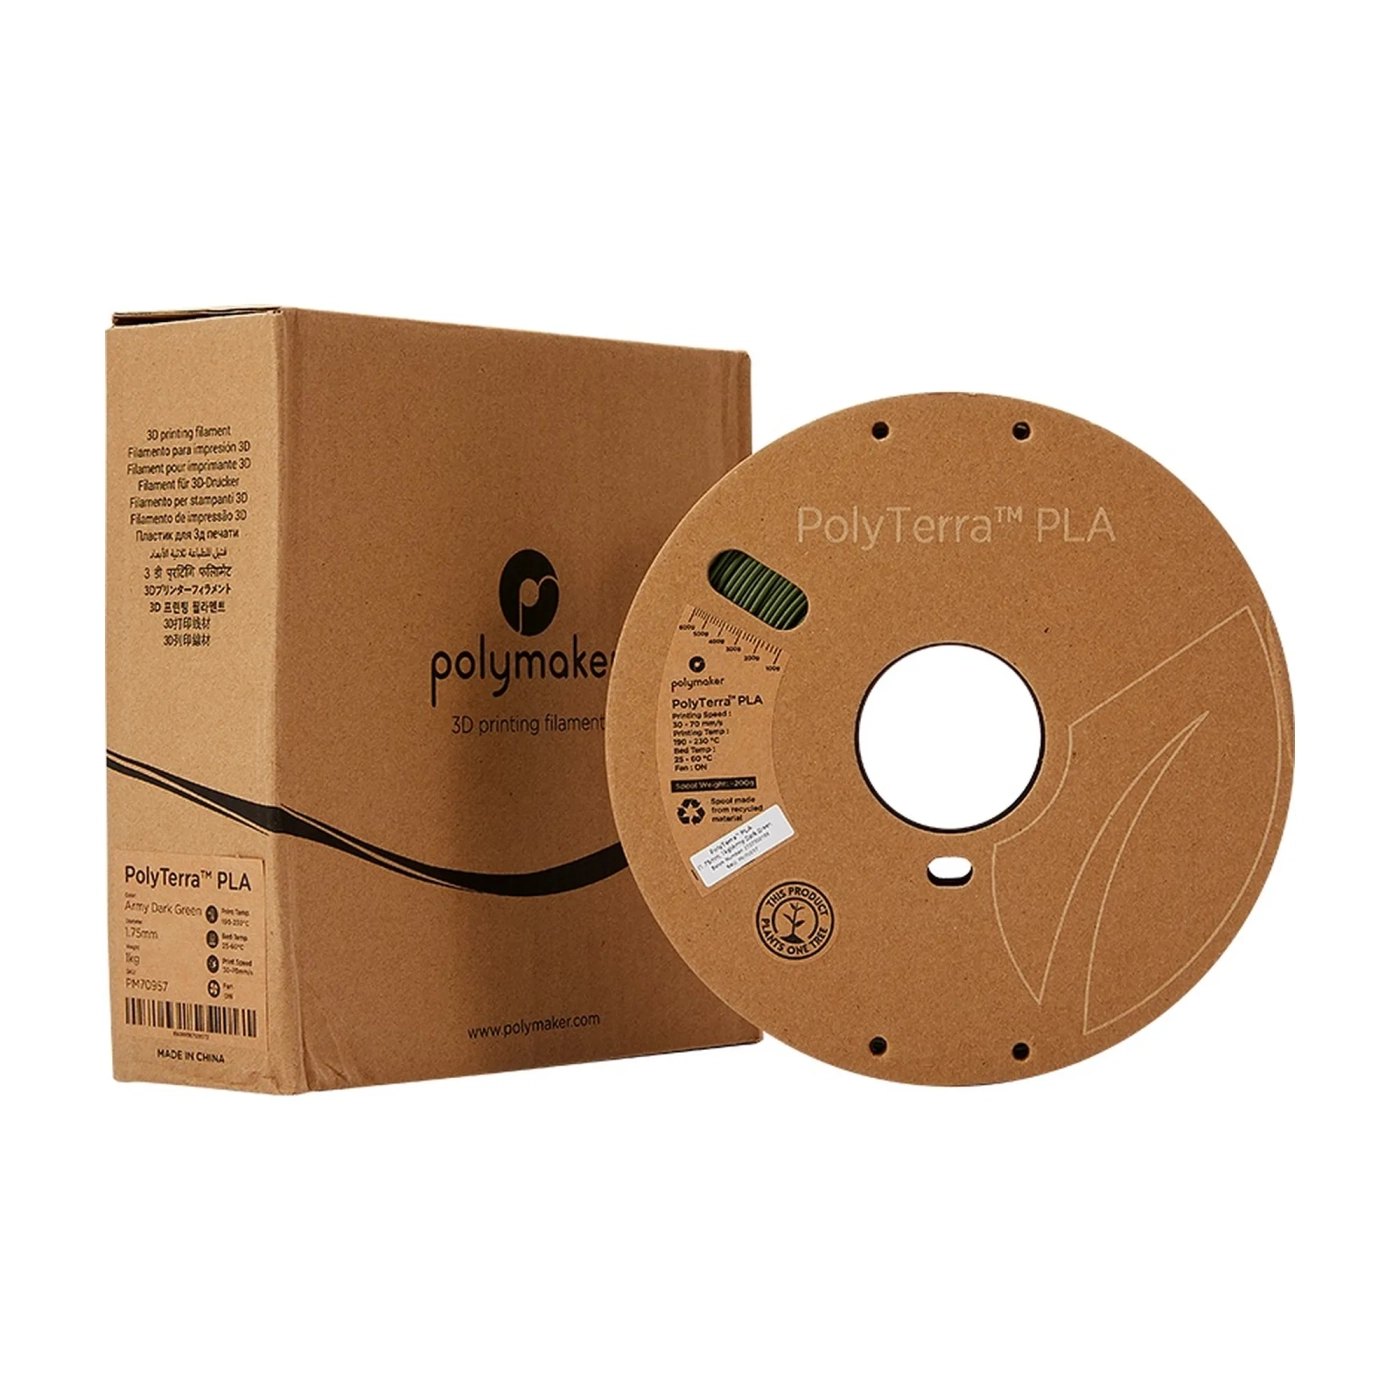 Купить PolyTerra PLA Filament (пластик) для 3D принтера Polymaker 1кг, 1.75мм, армейский темно-зеленый - фото 4